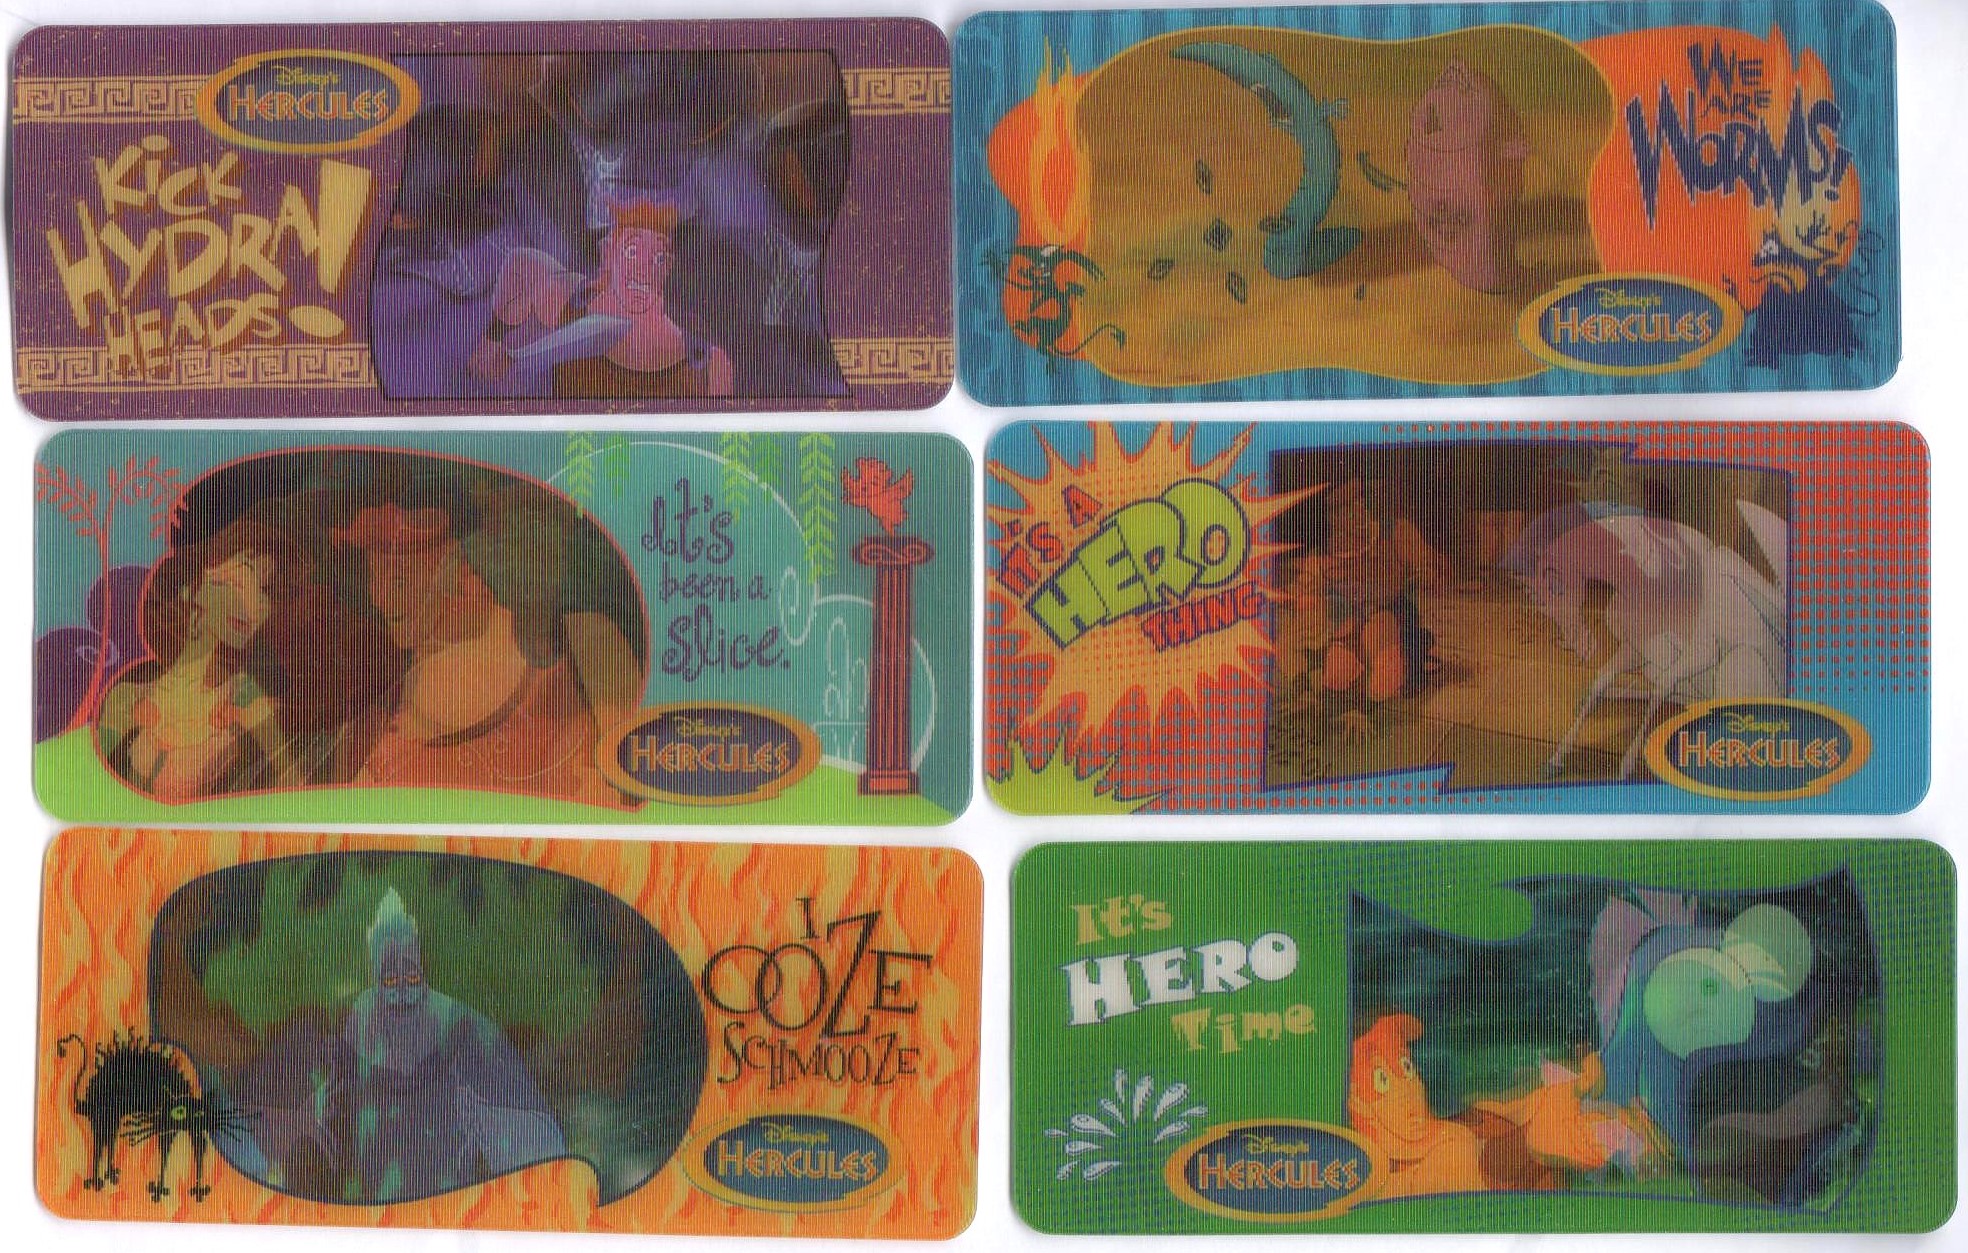 1997 Nesquik Hercules 3D Cards (2)